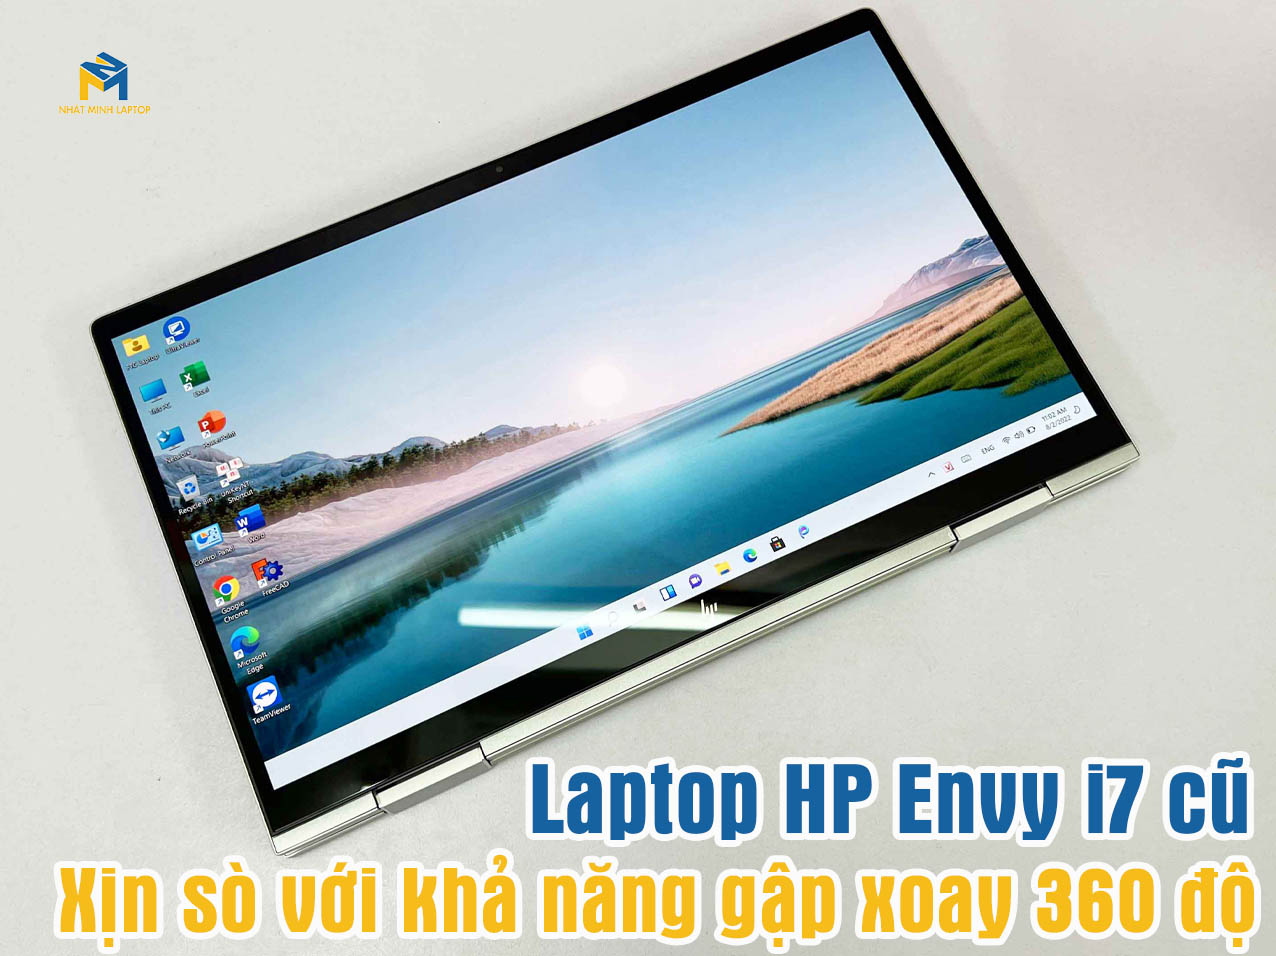 Laptop HP Envy i7 cũ cực xịn với khả năng xoay gập 360 độ